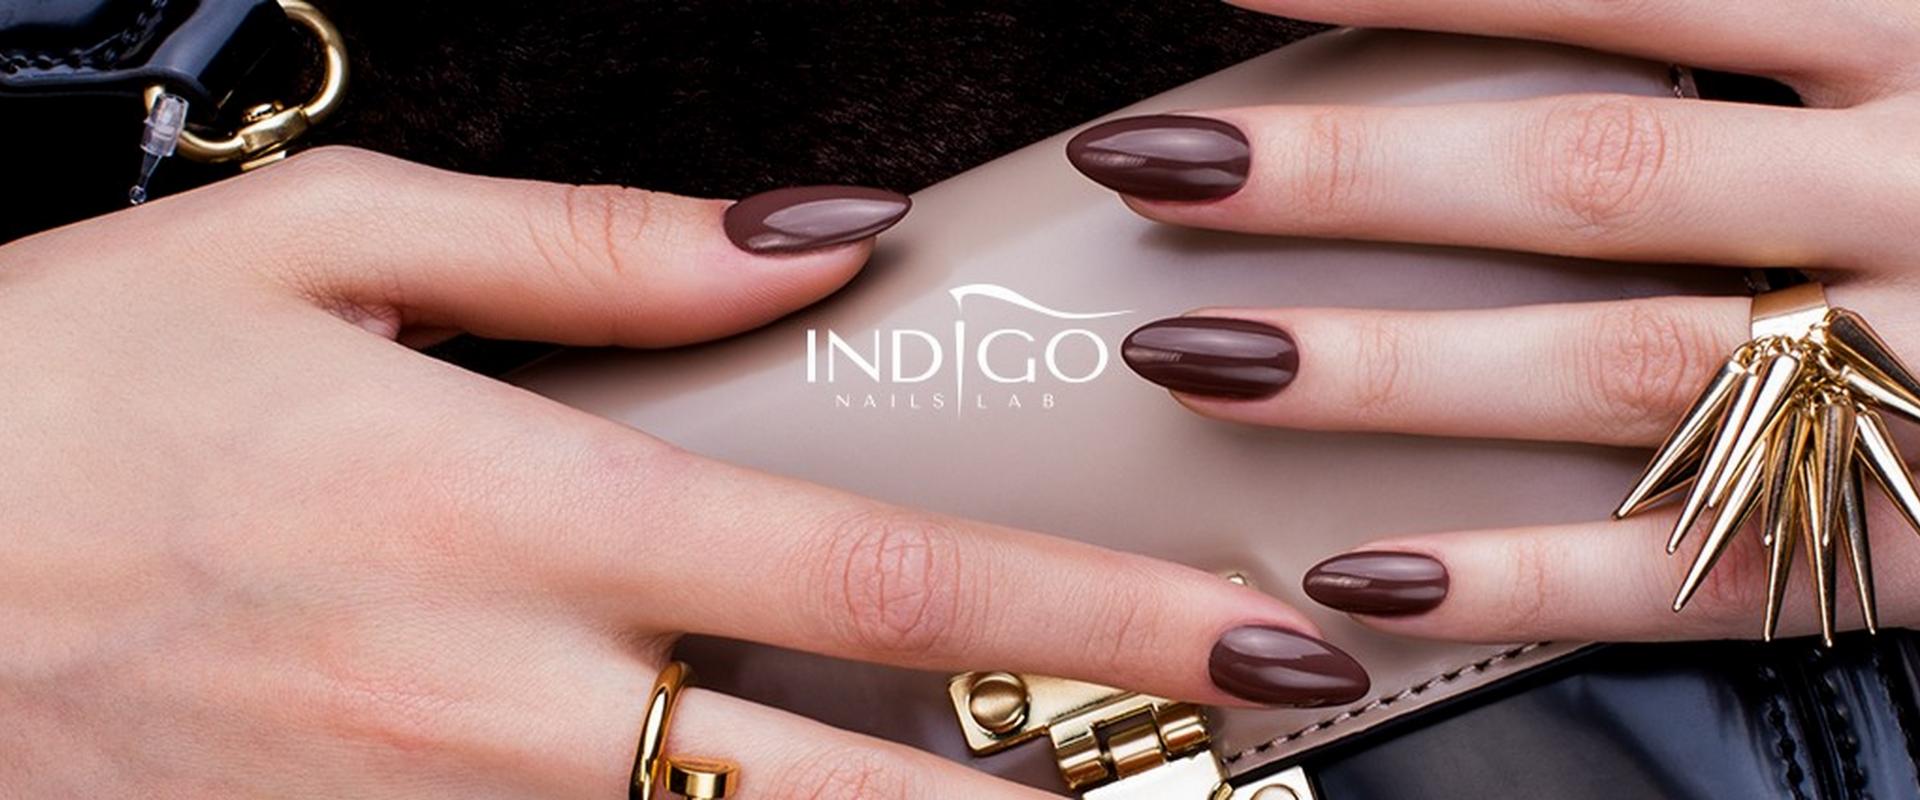 Indigo Nails: polskie lakiery do paznokci na hiszpańskich półkach